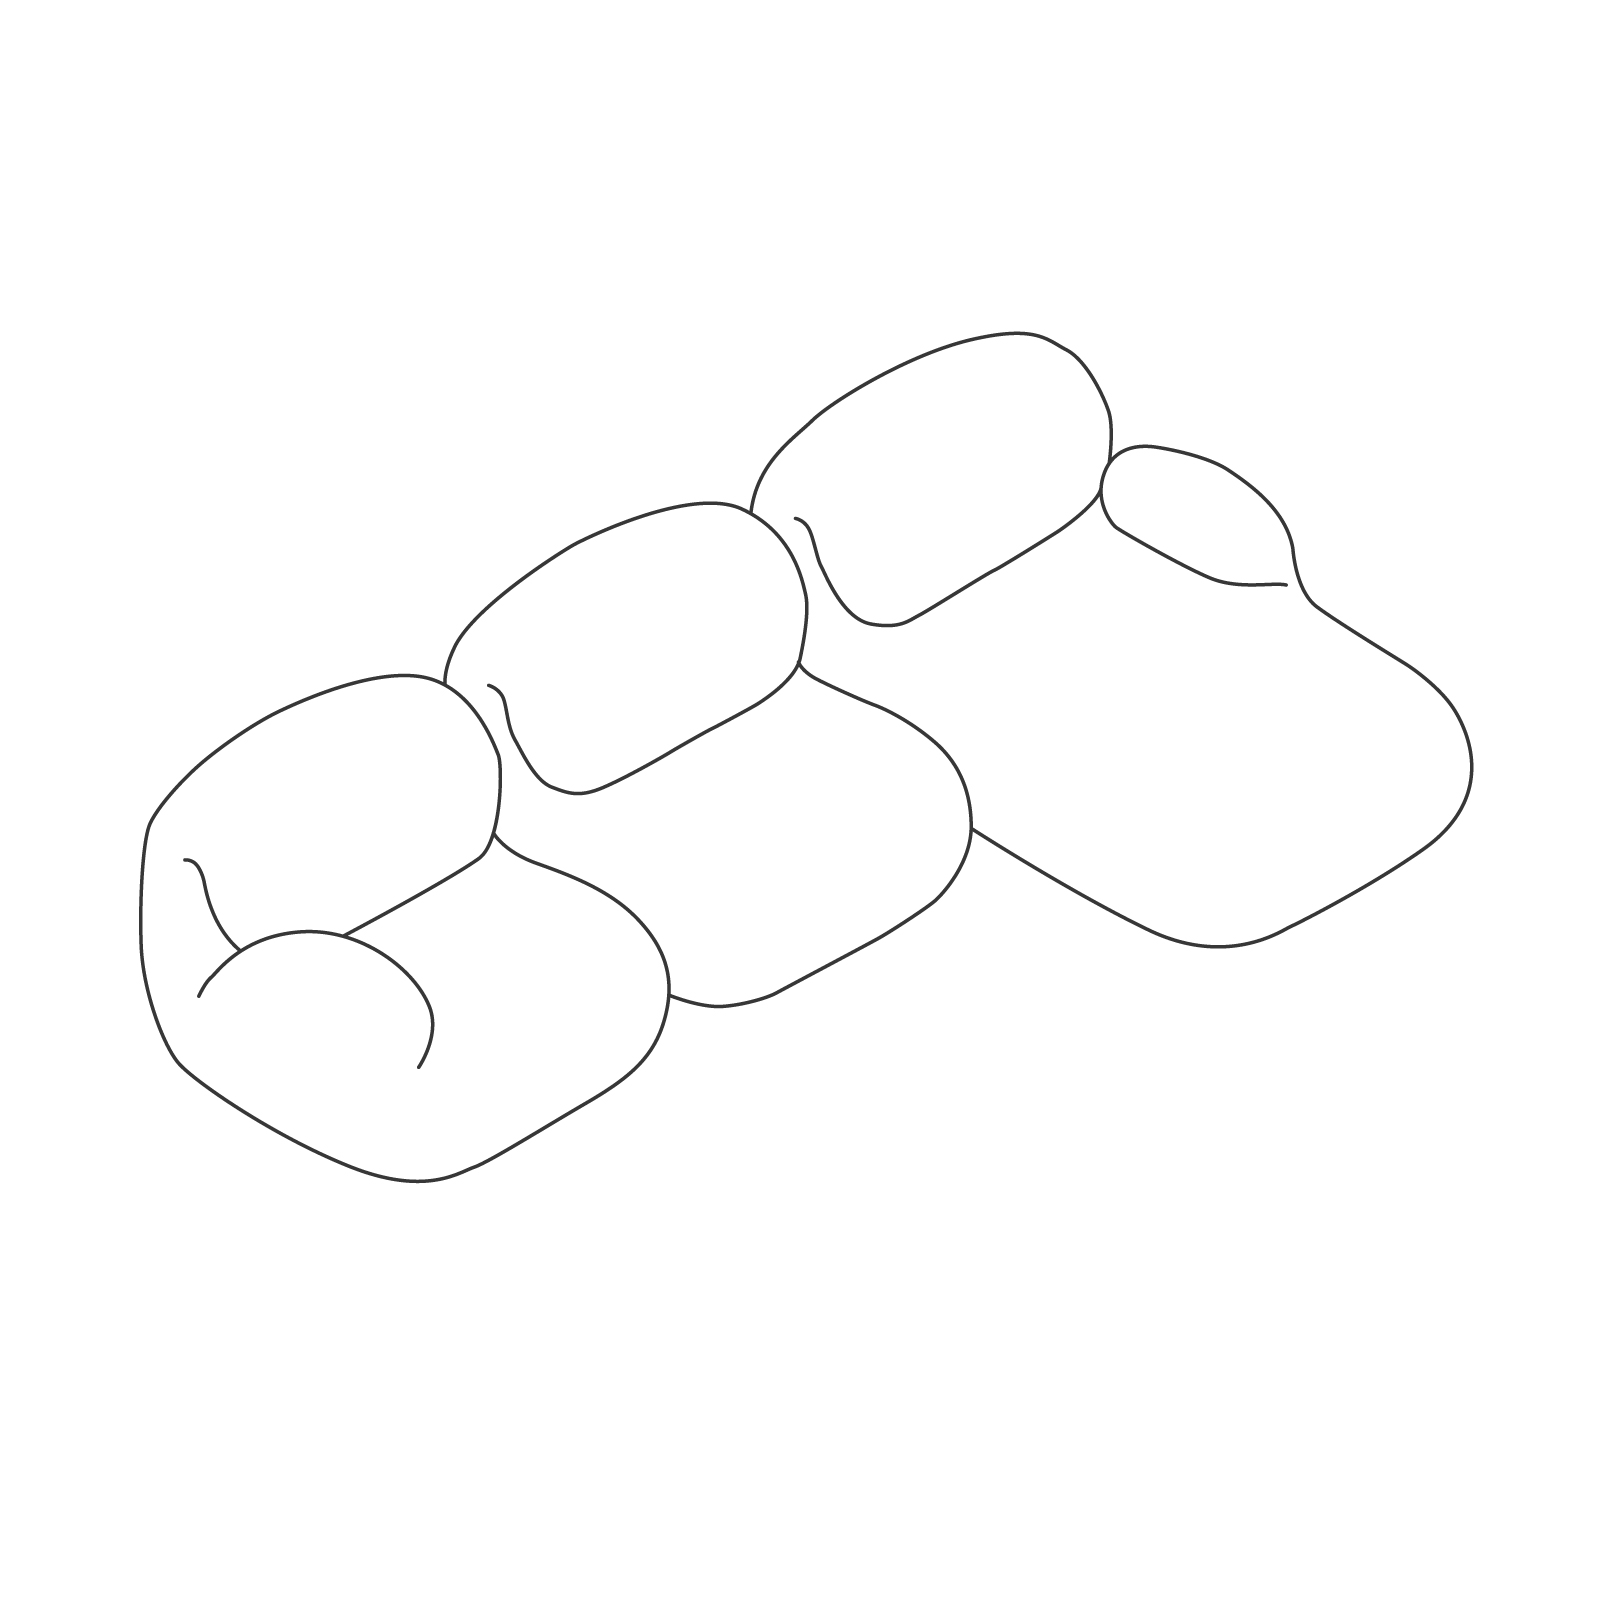 线描图 - Luva 模块化沙发系列–三座拼合式